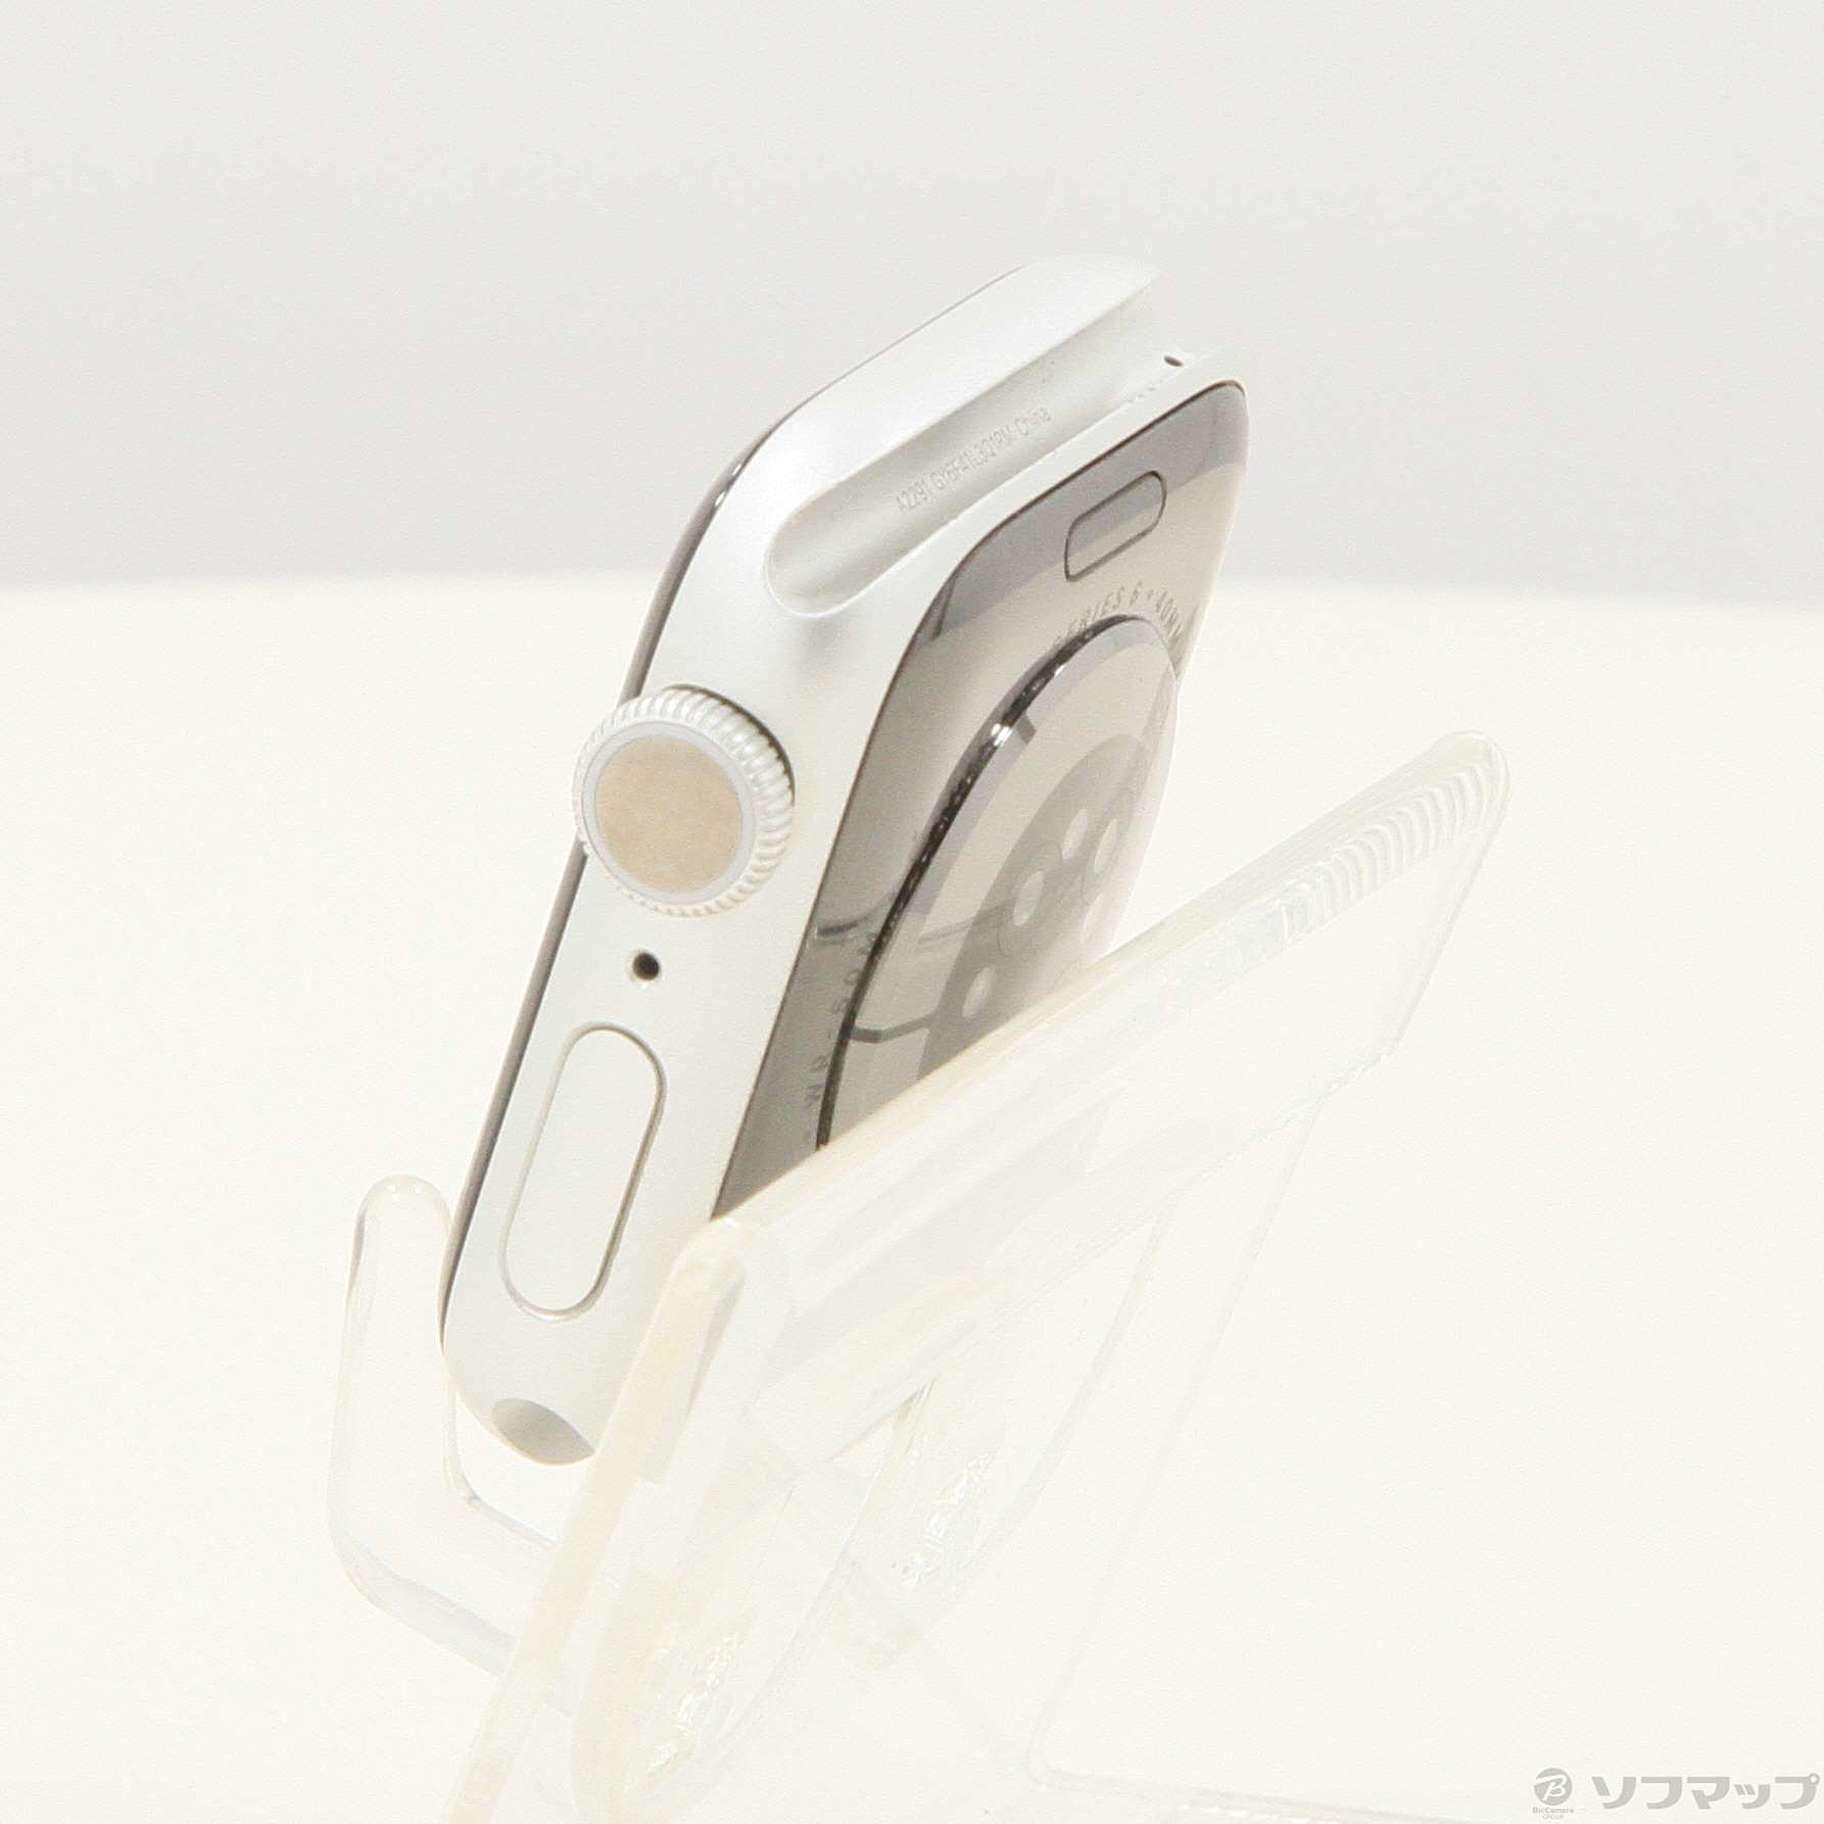 Apple(アップル) Apple Watch Series 6 GPS 40mm シルバーアルミニウム